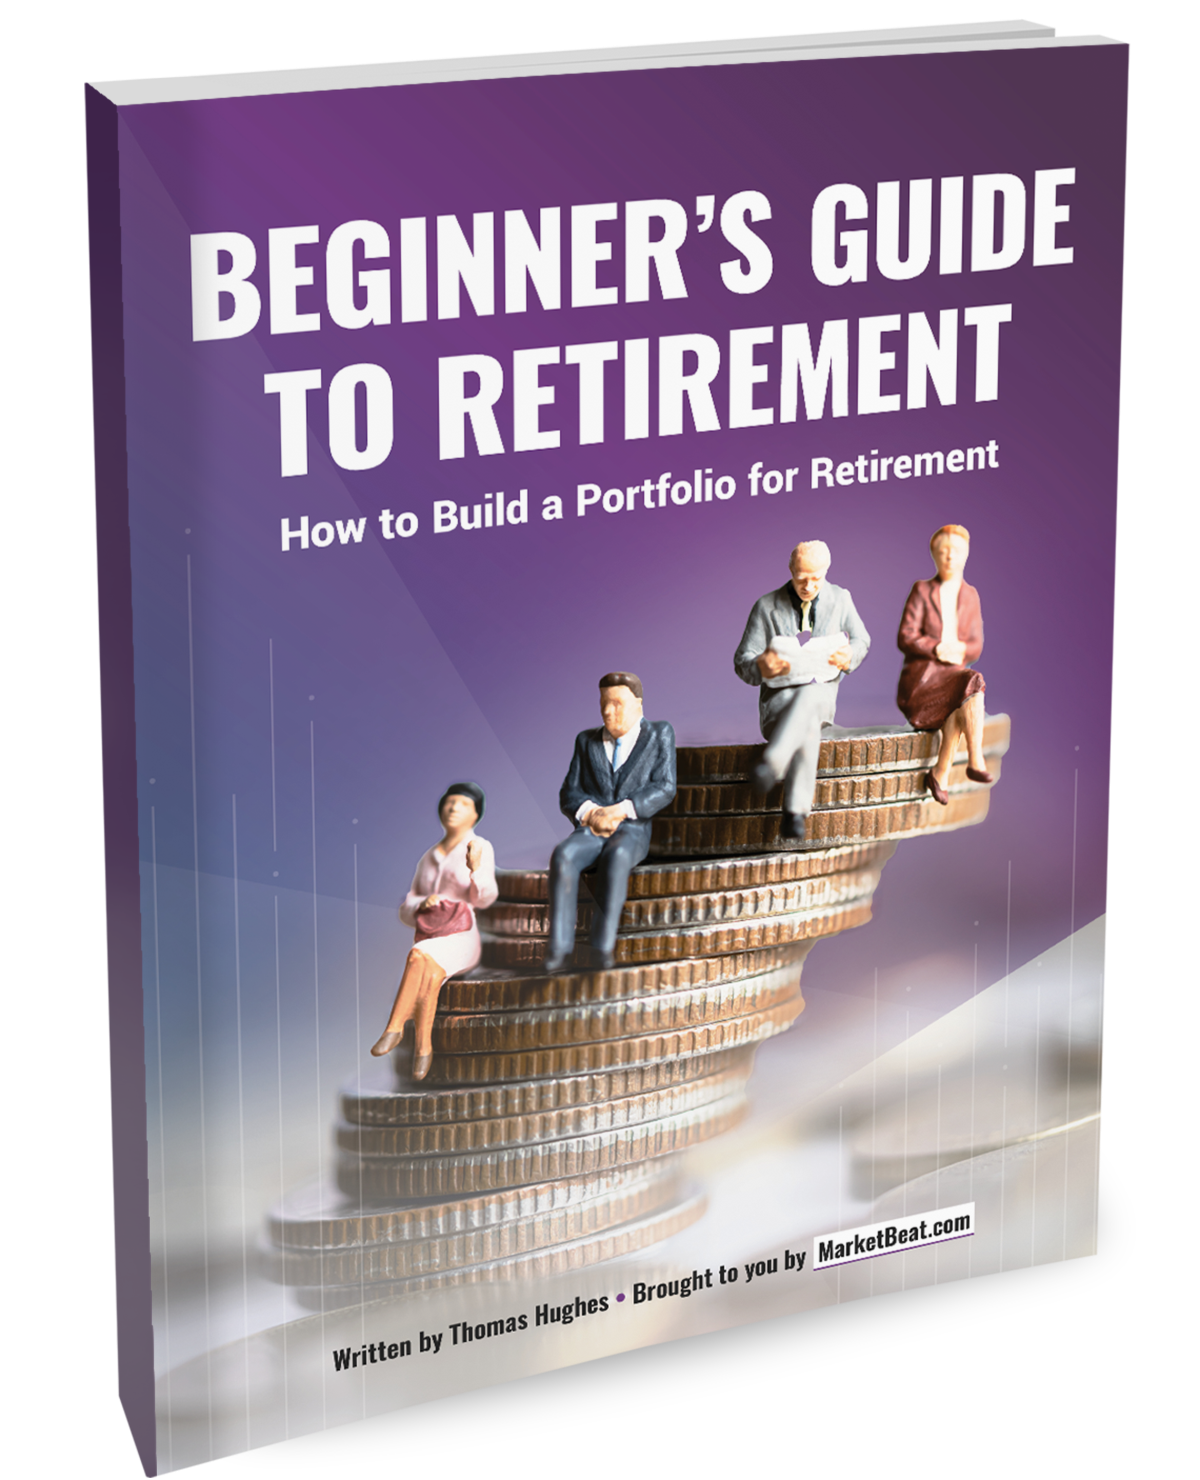 Beginner's Guide to Retirement Share Insurance